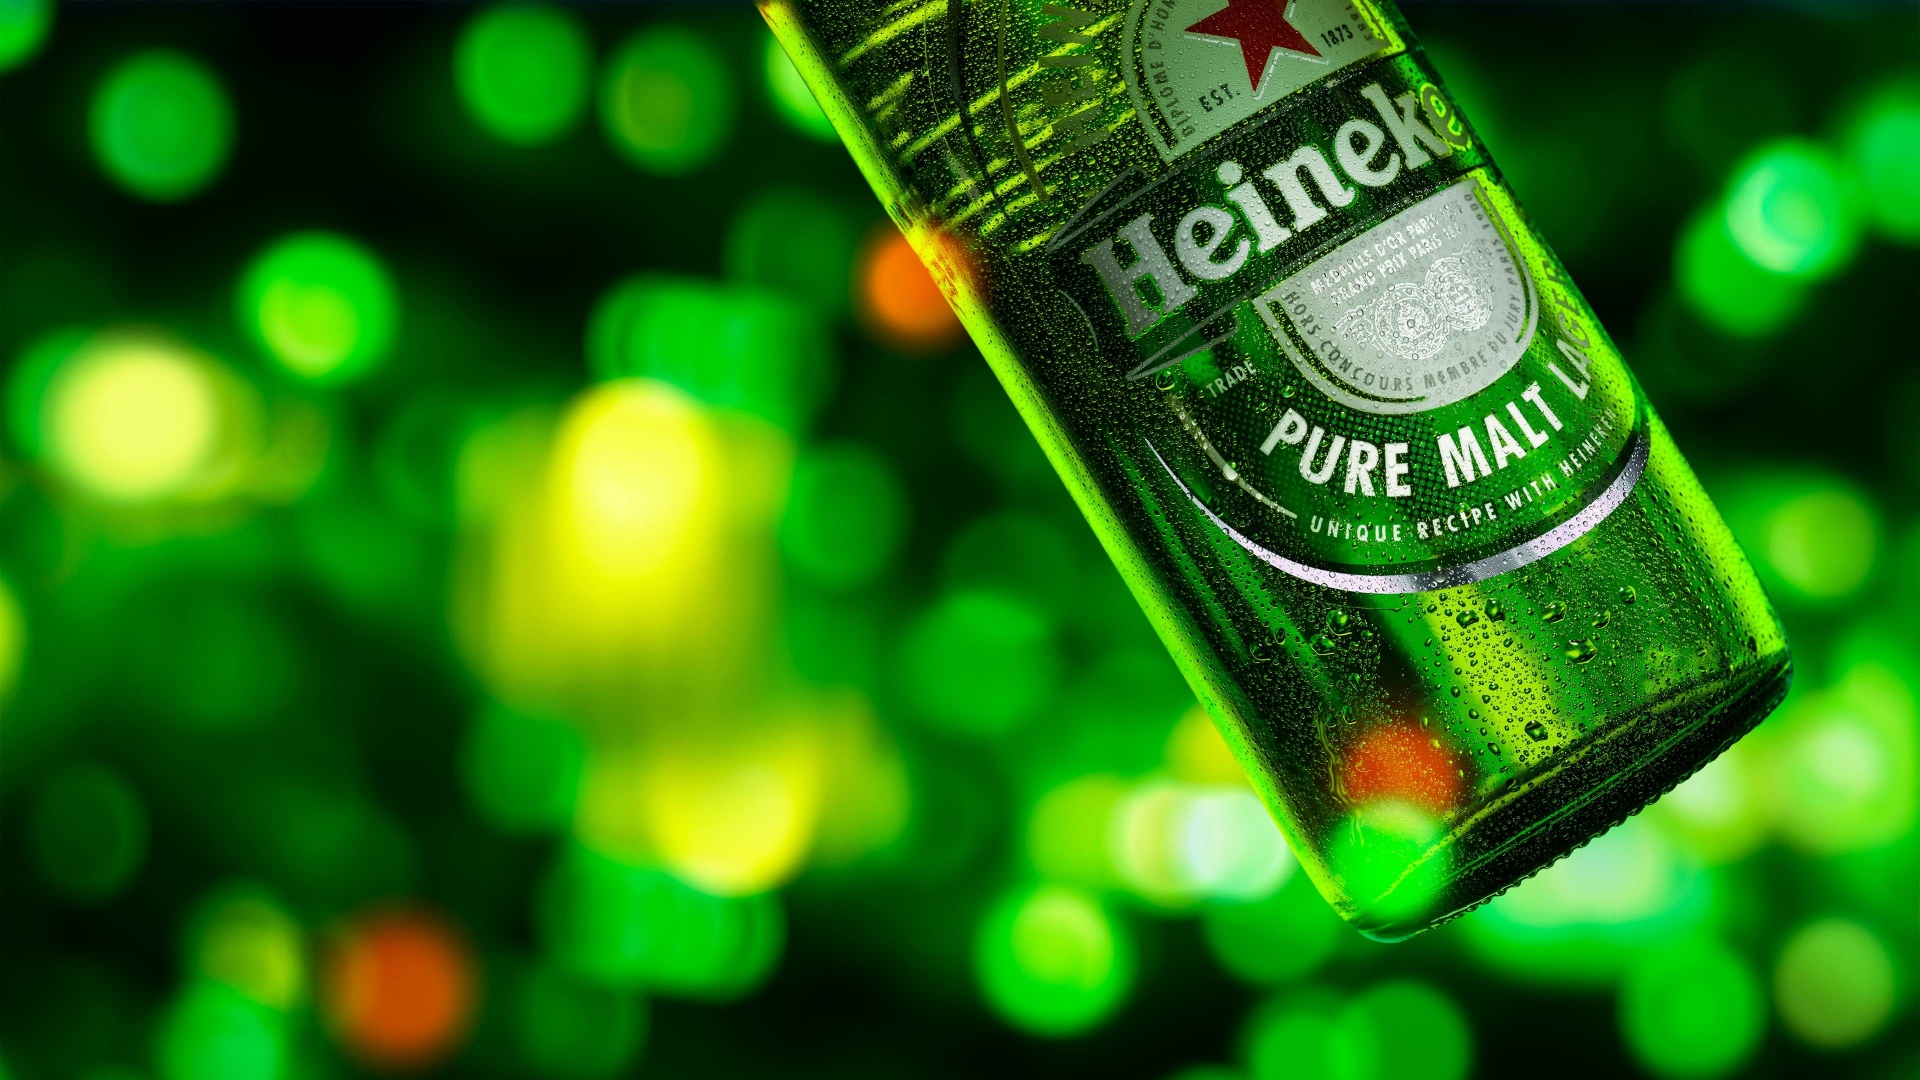 Photo: Heineken